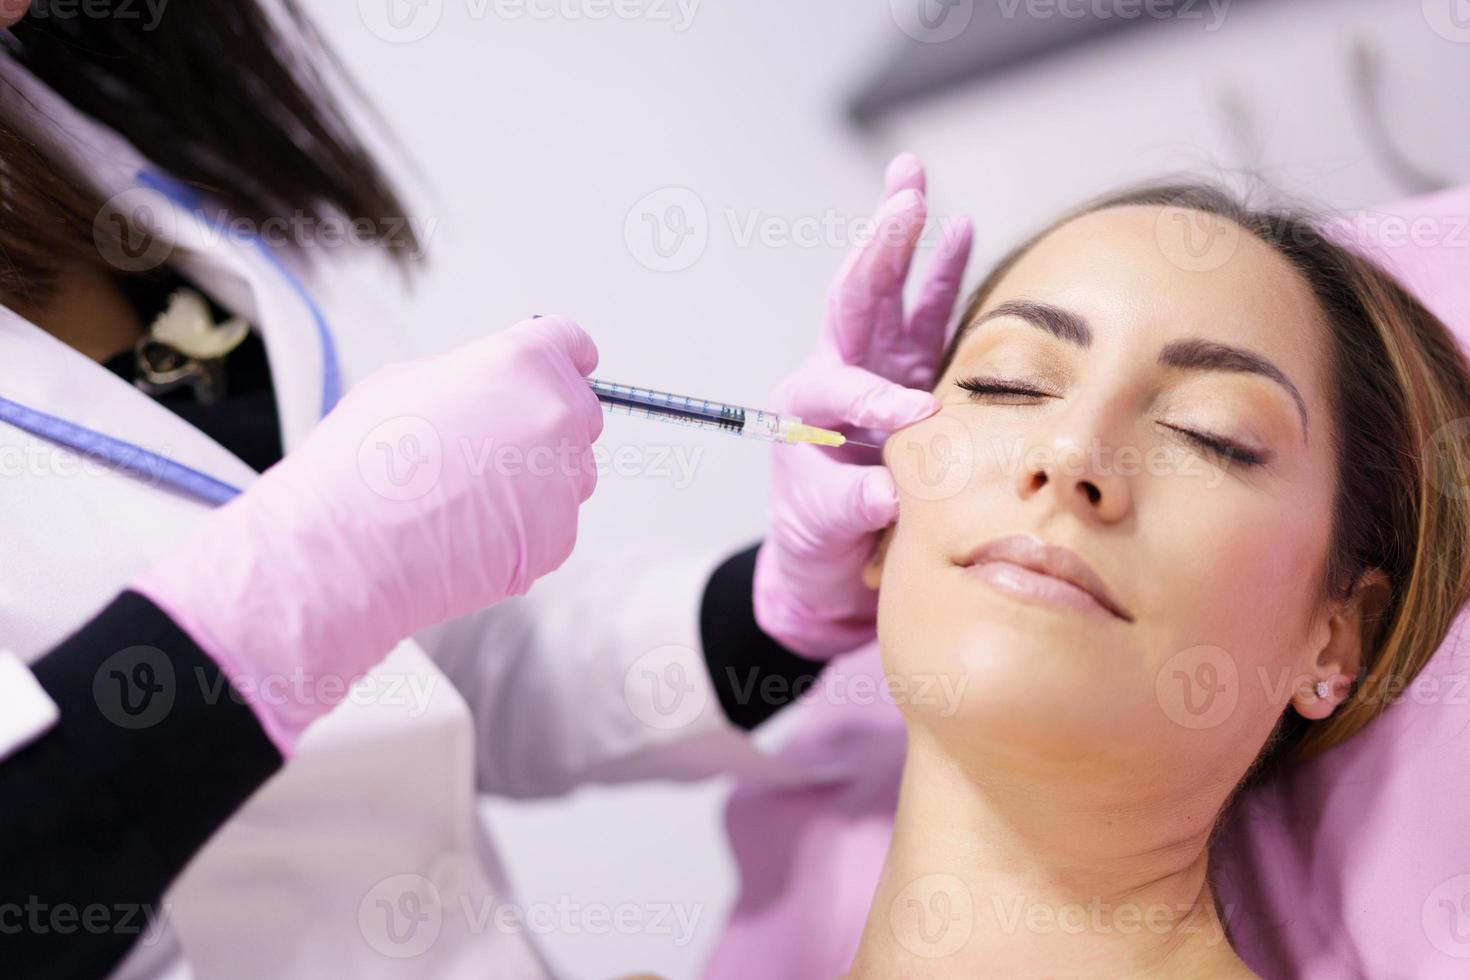 médico injetando ácido hialurônico nas maçãs do rosto de uma mulher como tratamento de rejuvenescimento facial. foto